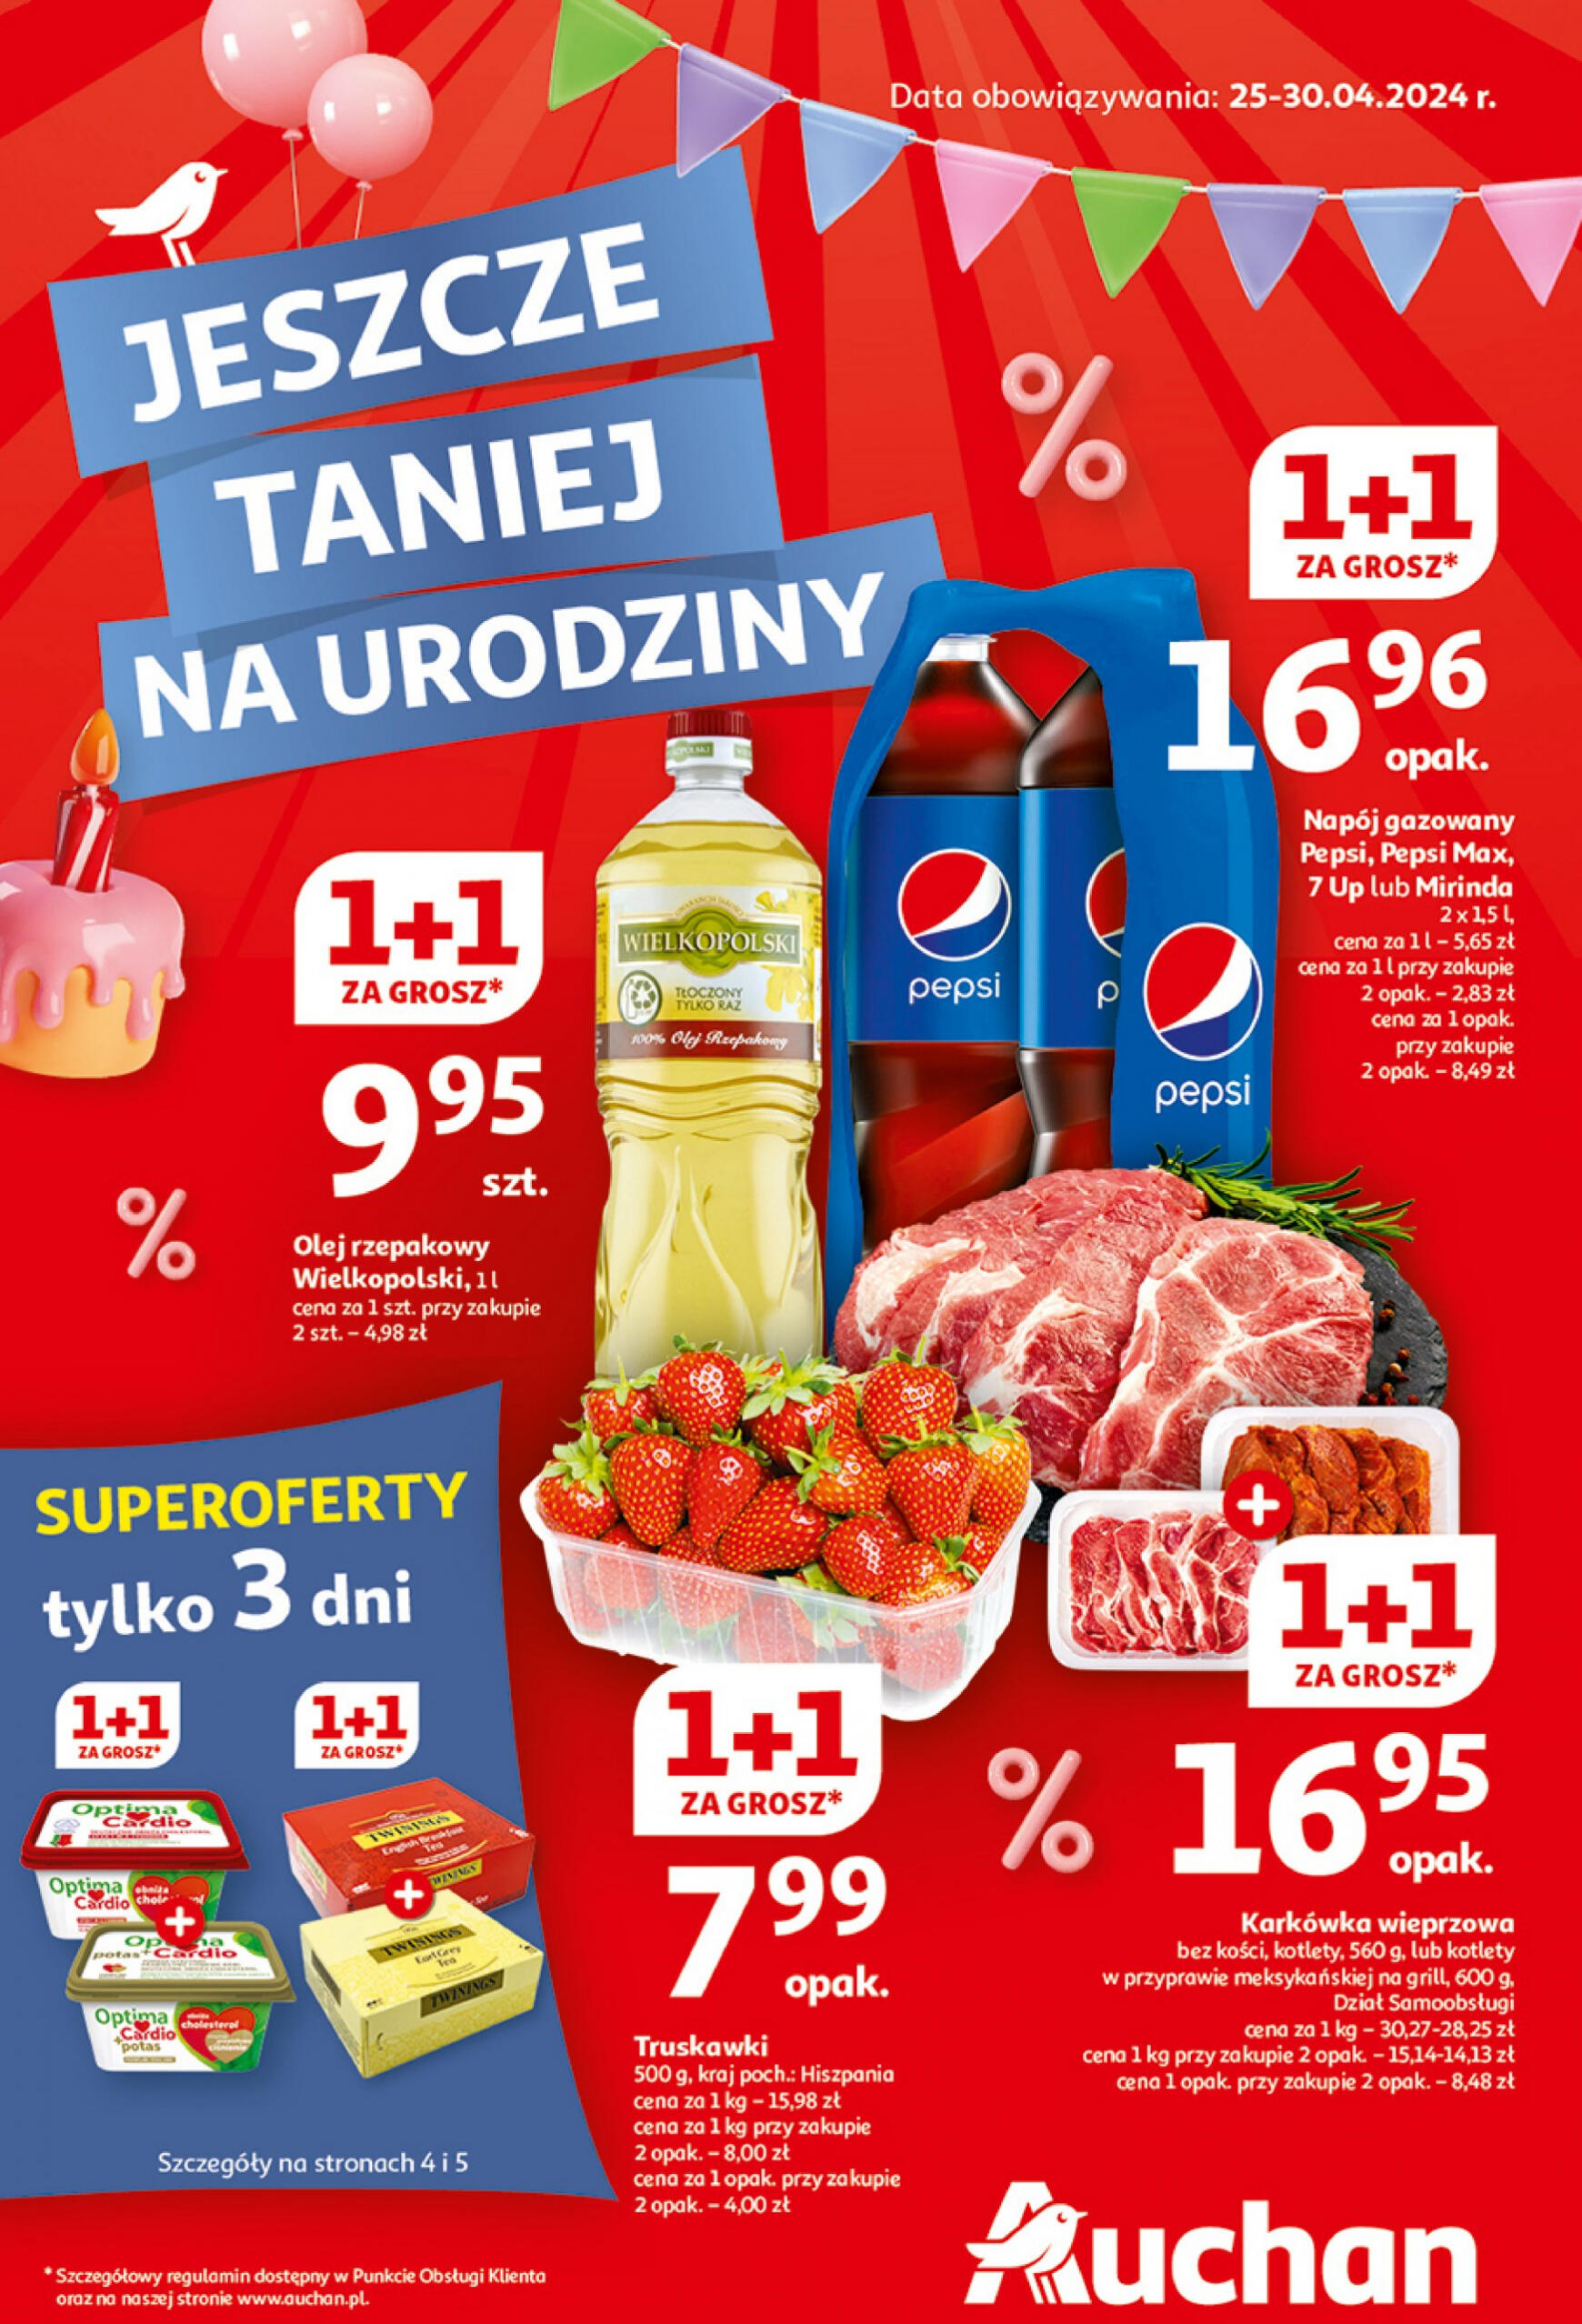 auchan - Hipermarket Auchan - Gazetka Jeszcze taniej na urodziny gazetka aktualna ważna od 25.04. - 30.04.